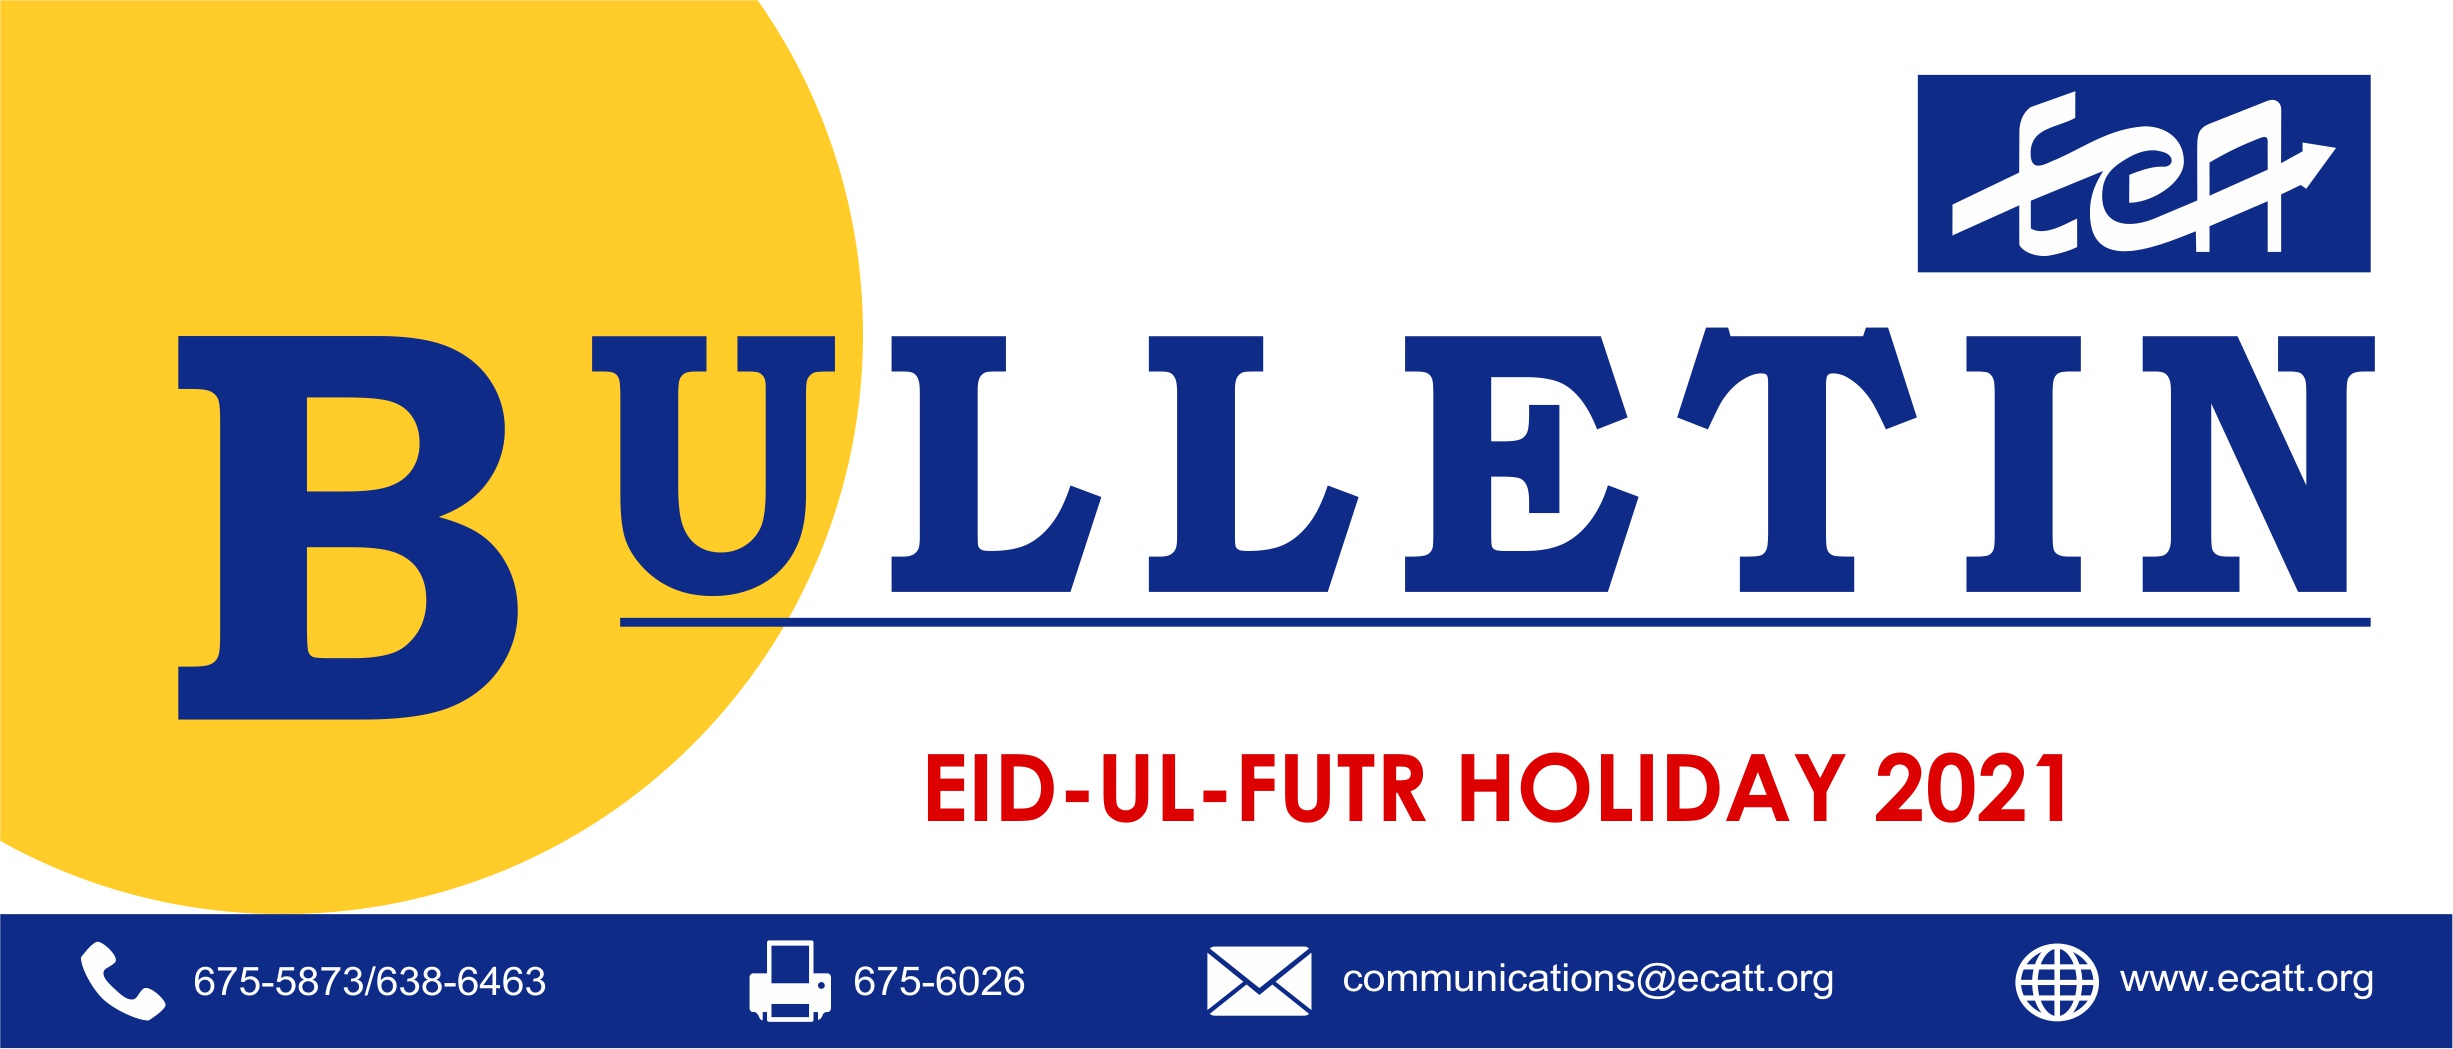 ECA Bulletin - Eid-ul-Fitr 2021